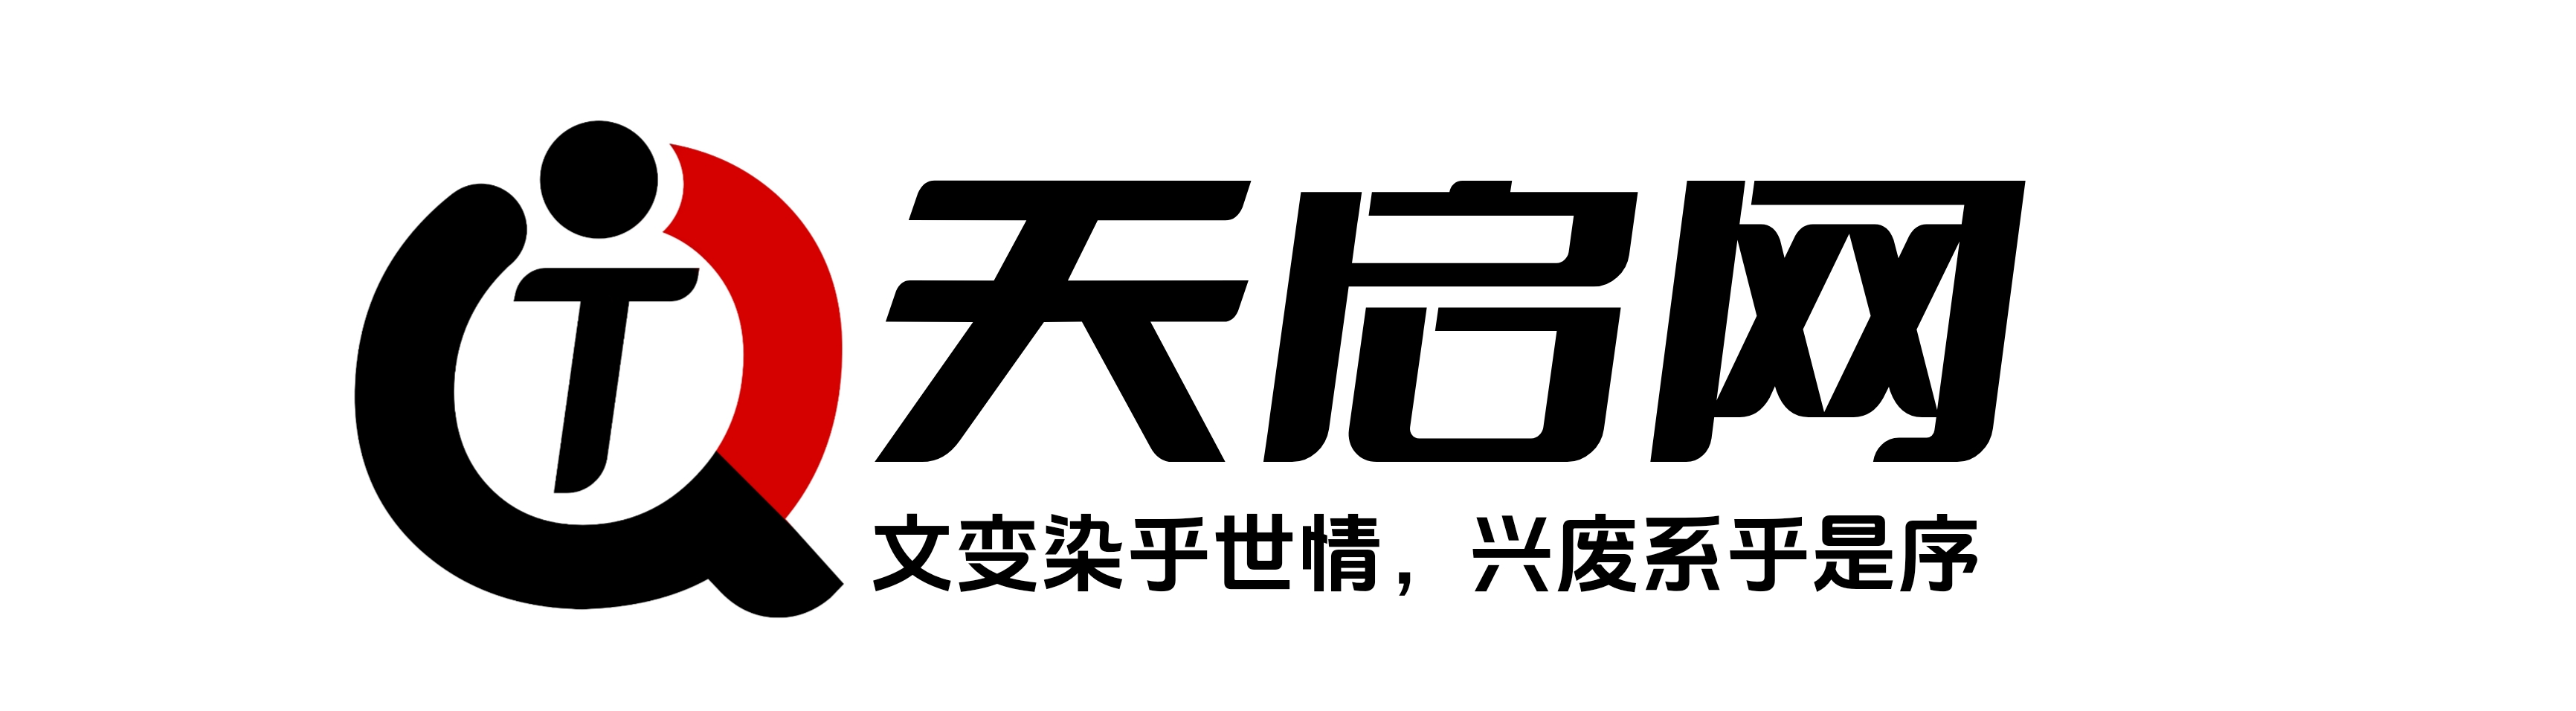 天启网定稿logo